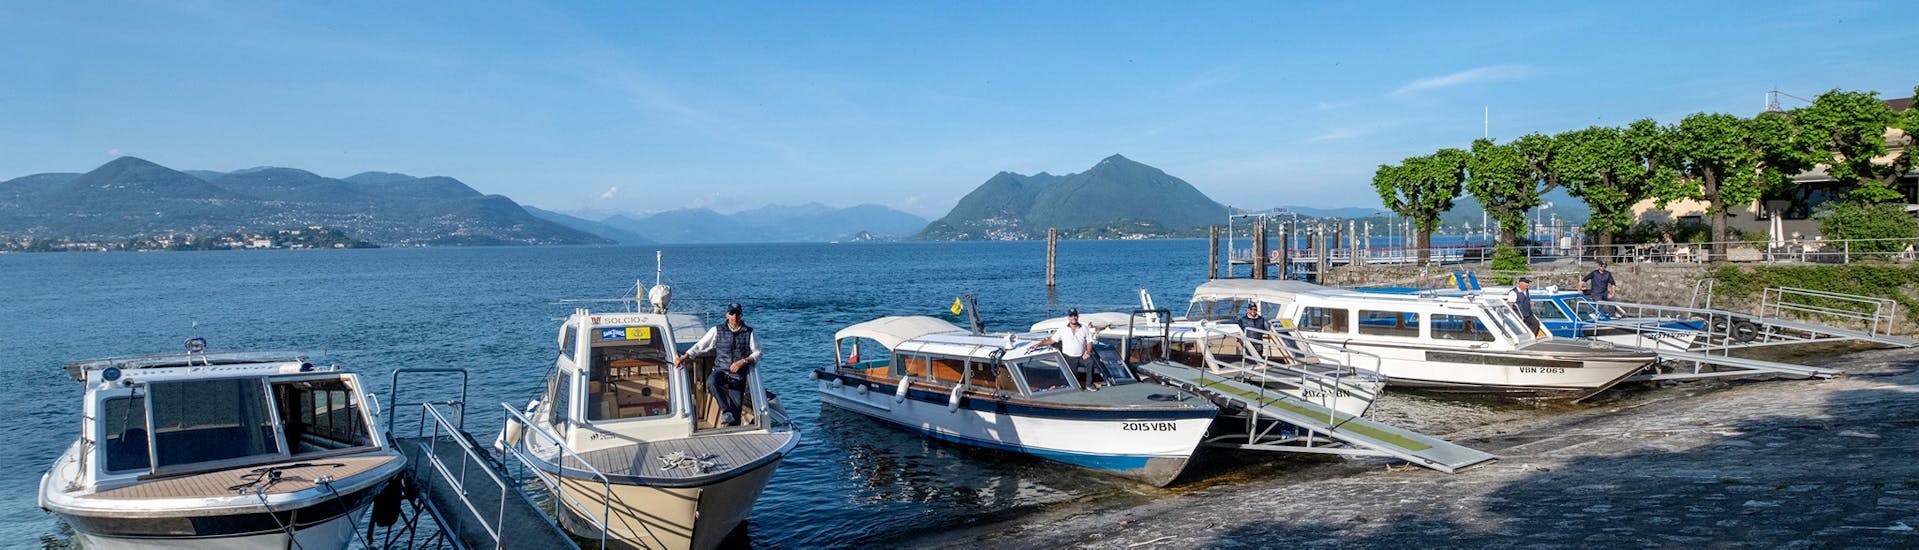 Uitzicht op de boten die gebruikt worden voor de Boottransfer van Stresa naar Isola Pescatori en Isola Bella met Lake Tours Stresa.